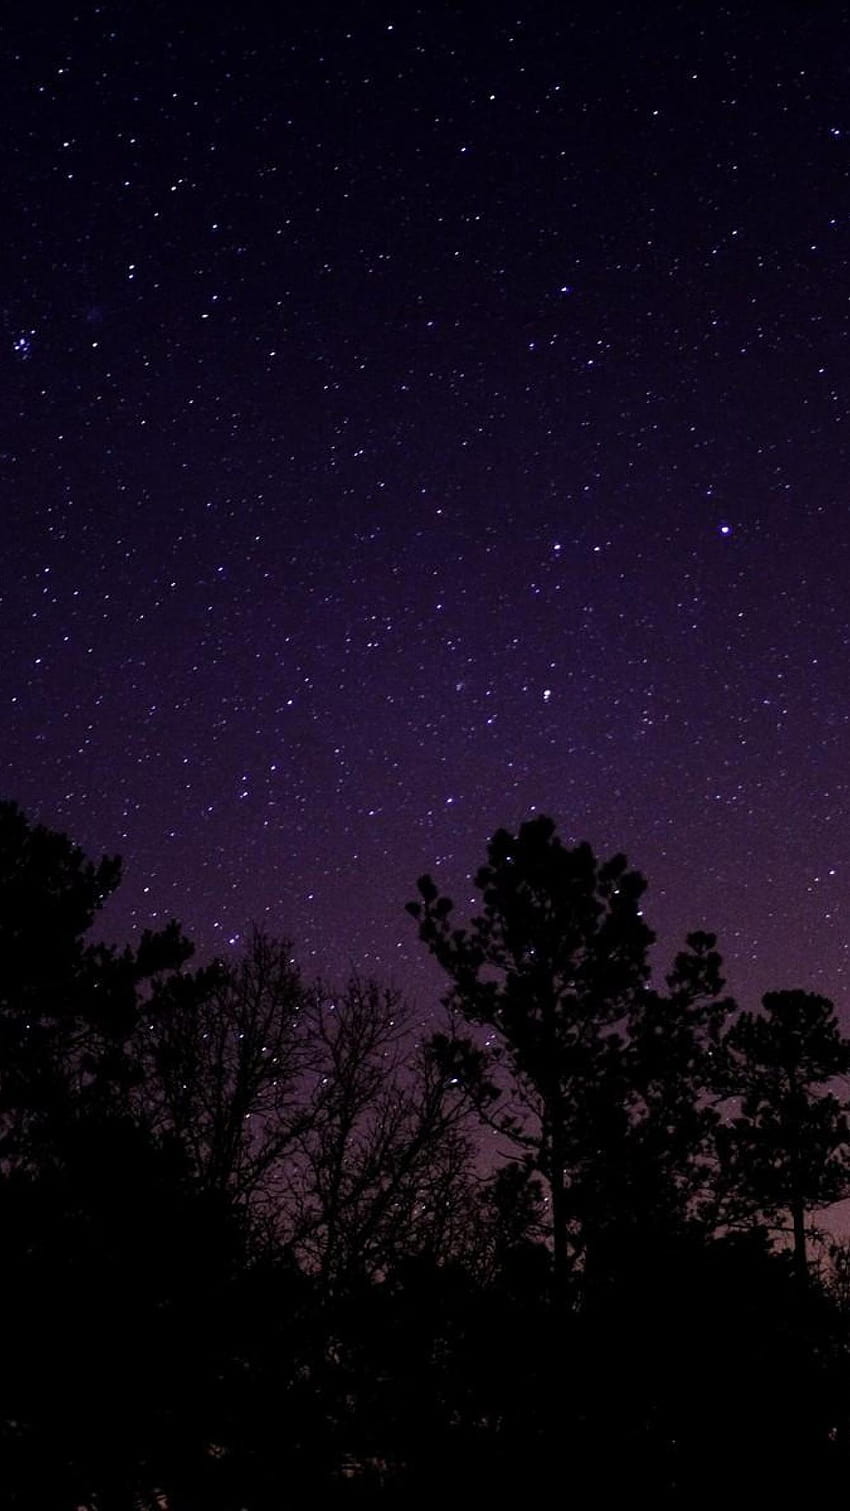 Gece Doğa Ağaçlar yıldızlı gökyüzünün altında Gökyüzü Yıldız Ağacı, gece gökyüzü mobil HD telefon duvar kağıdı